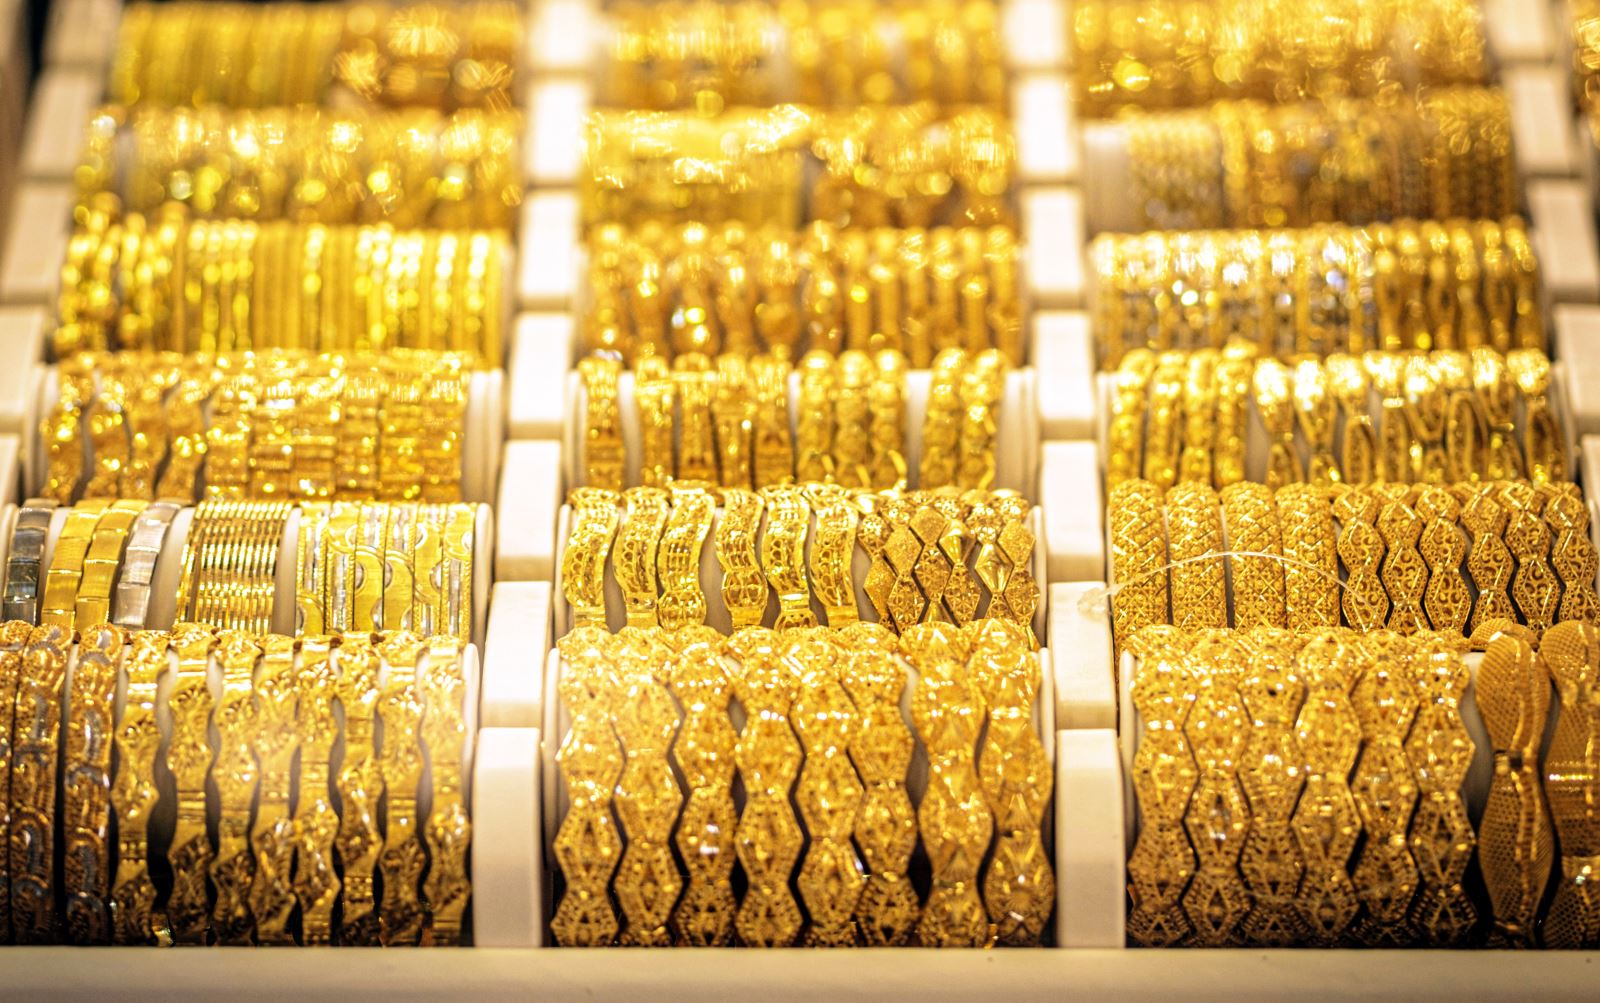 Giá vàng hôm nay 8/11: Vàng SJC gần 59 triệu đồng/lượng, lập đỉnh trong năm